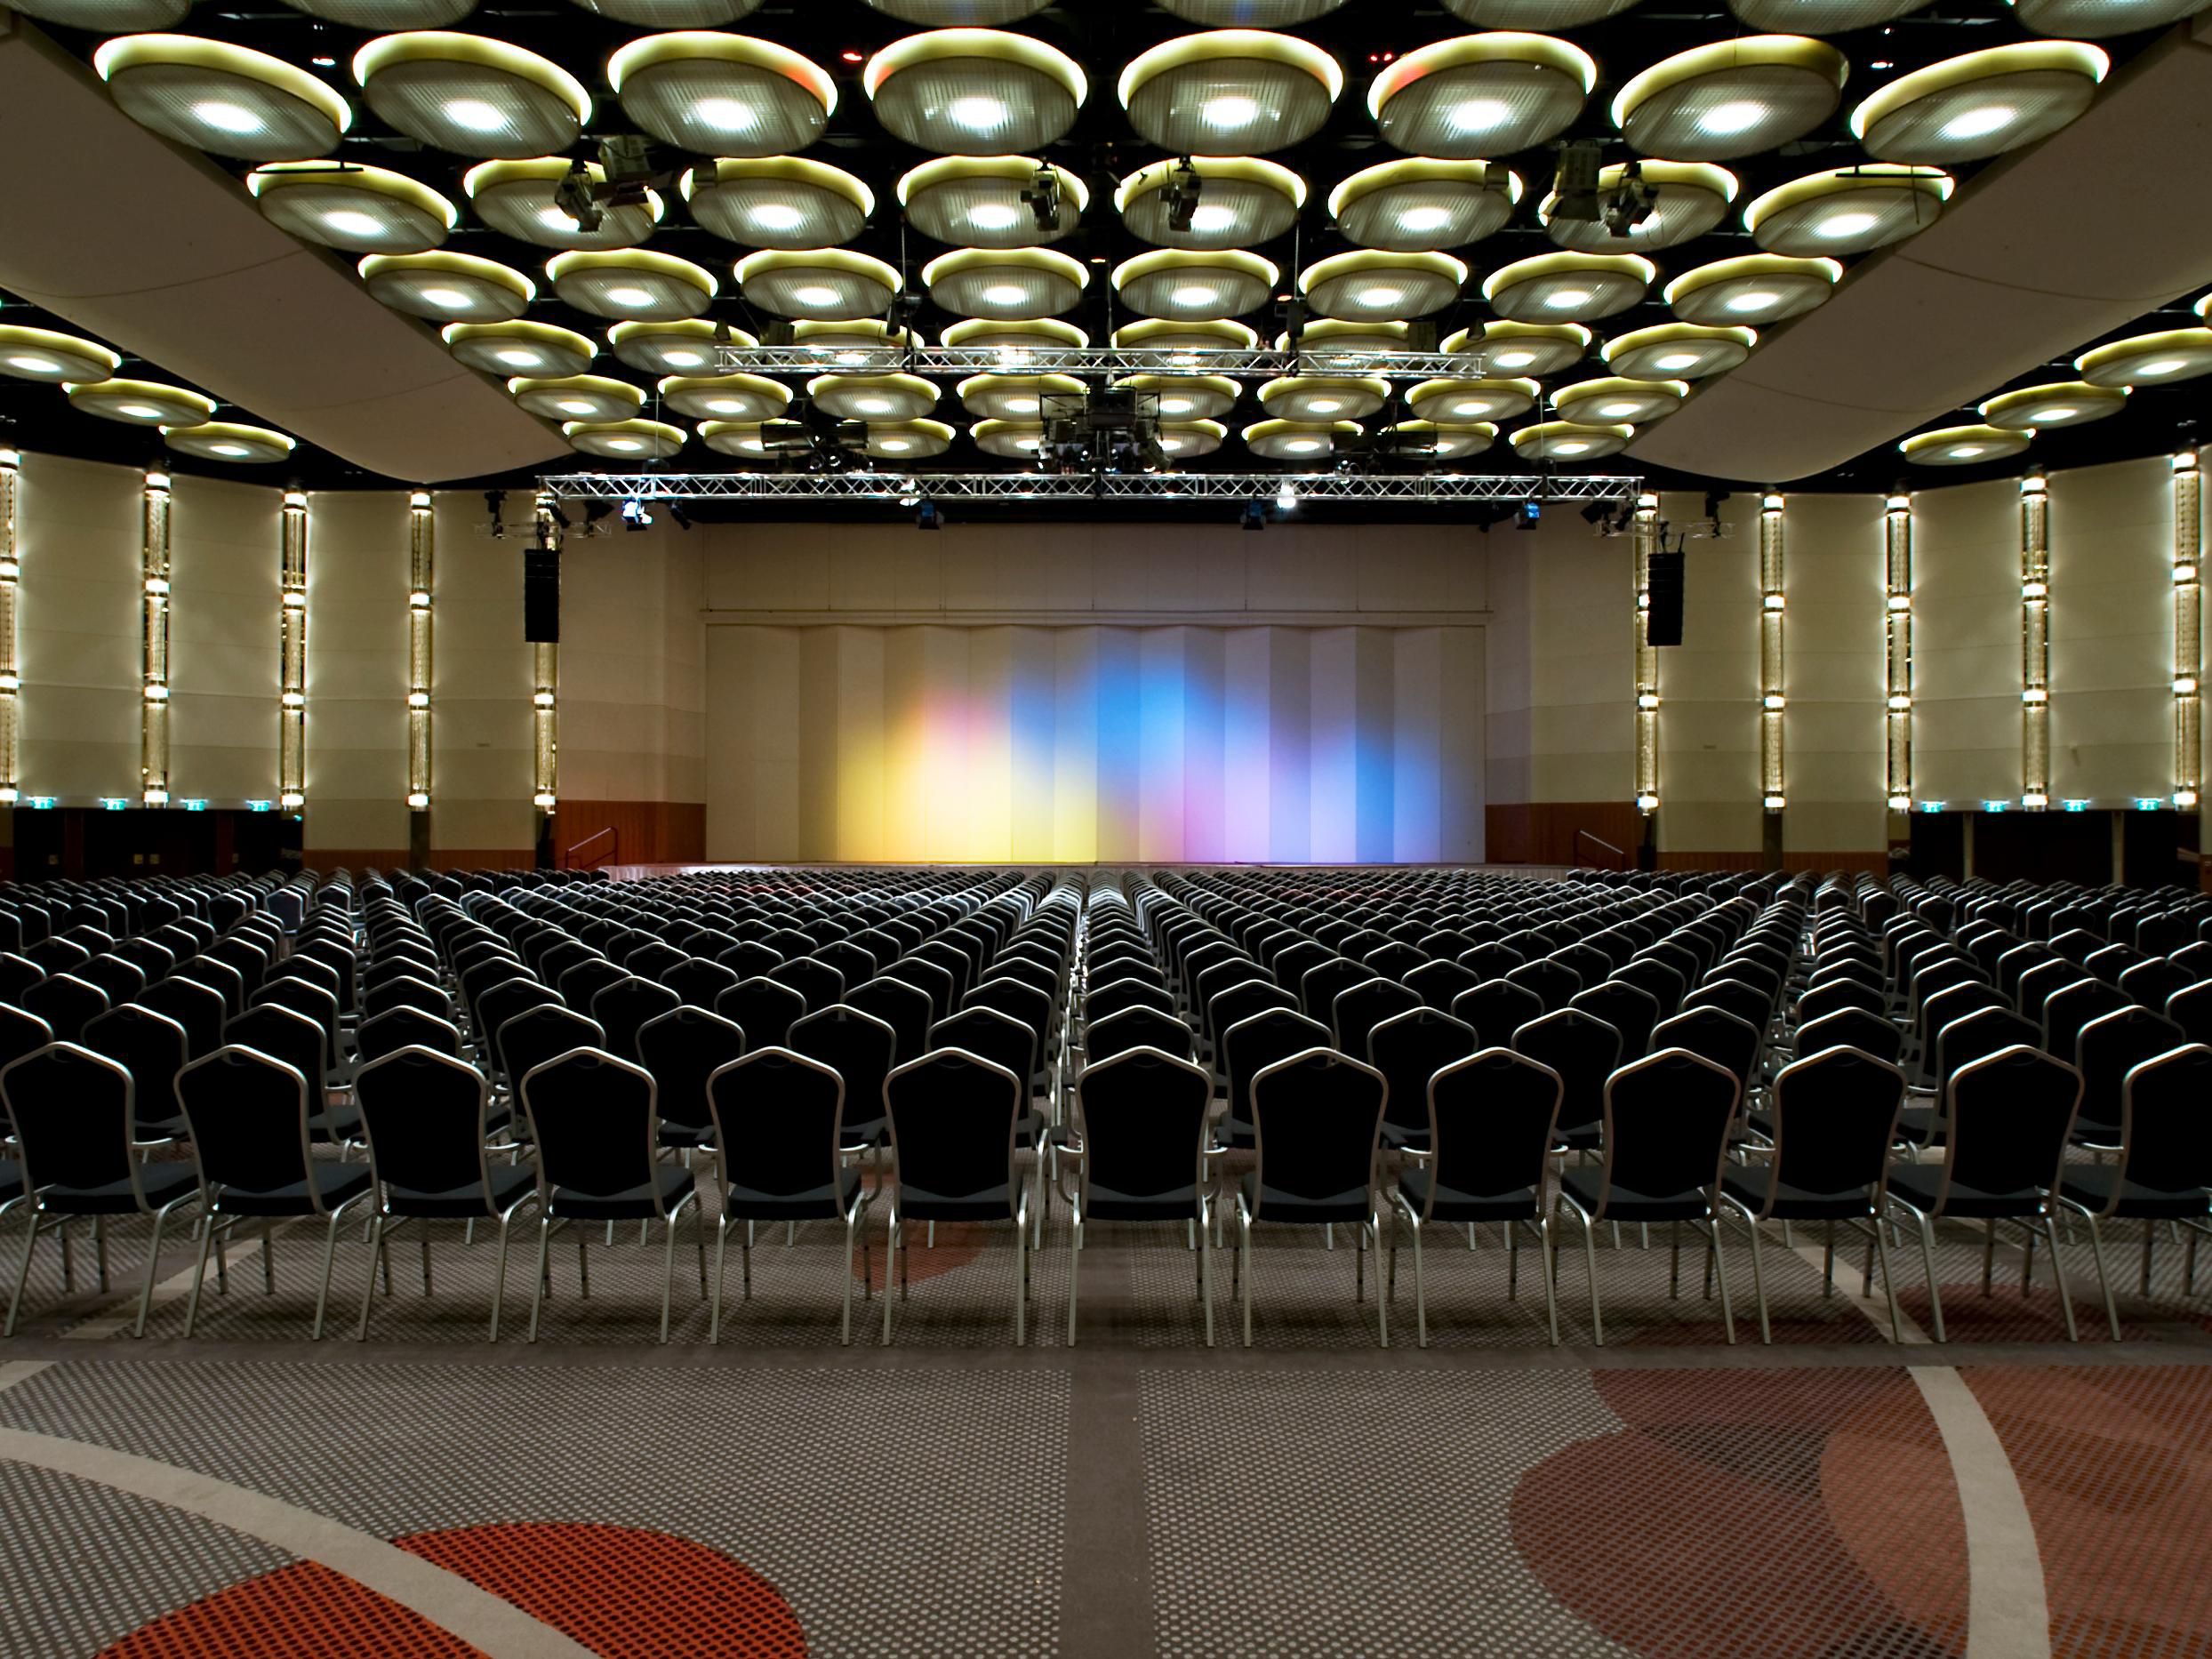 Mit 14 Veranstaltungsräumen, zwei Kongress-/Ballsälen und einer Veranstaltungsfläche von über 4.000 m² sind wir eines der größten Kongresshotels Nordrhein-Westfalens. Die Räume sind individuell kombinier- und gestaltbar und bieten Ihnen damit jegliche Flexibilität für Ihre Veranstaltung.